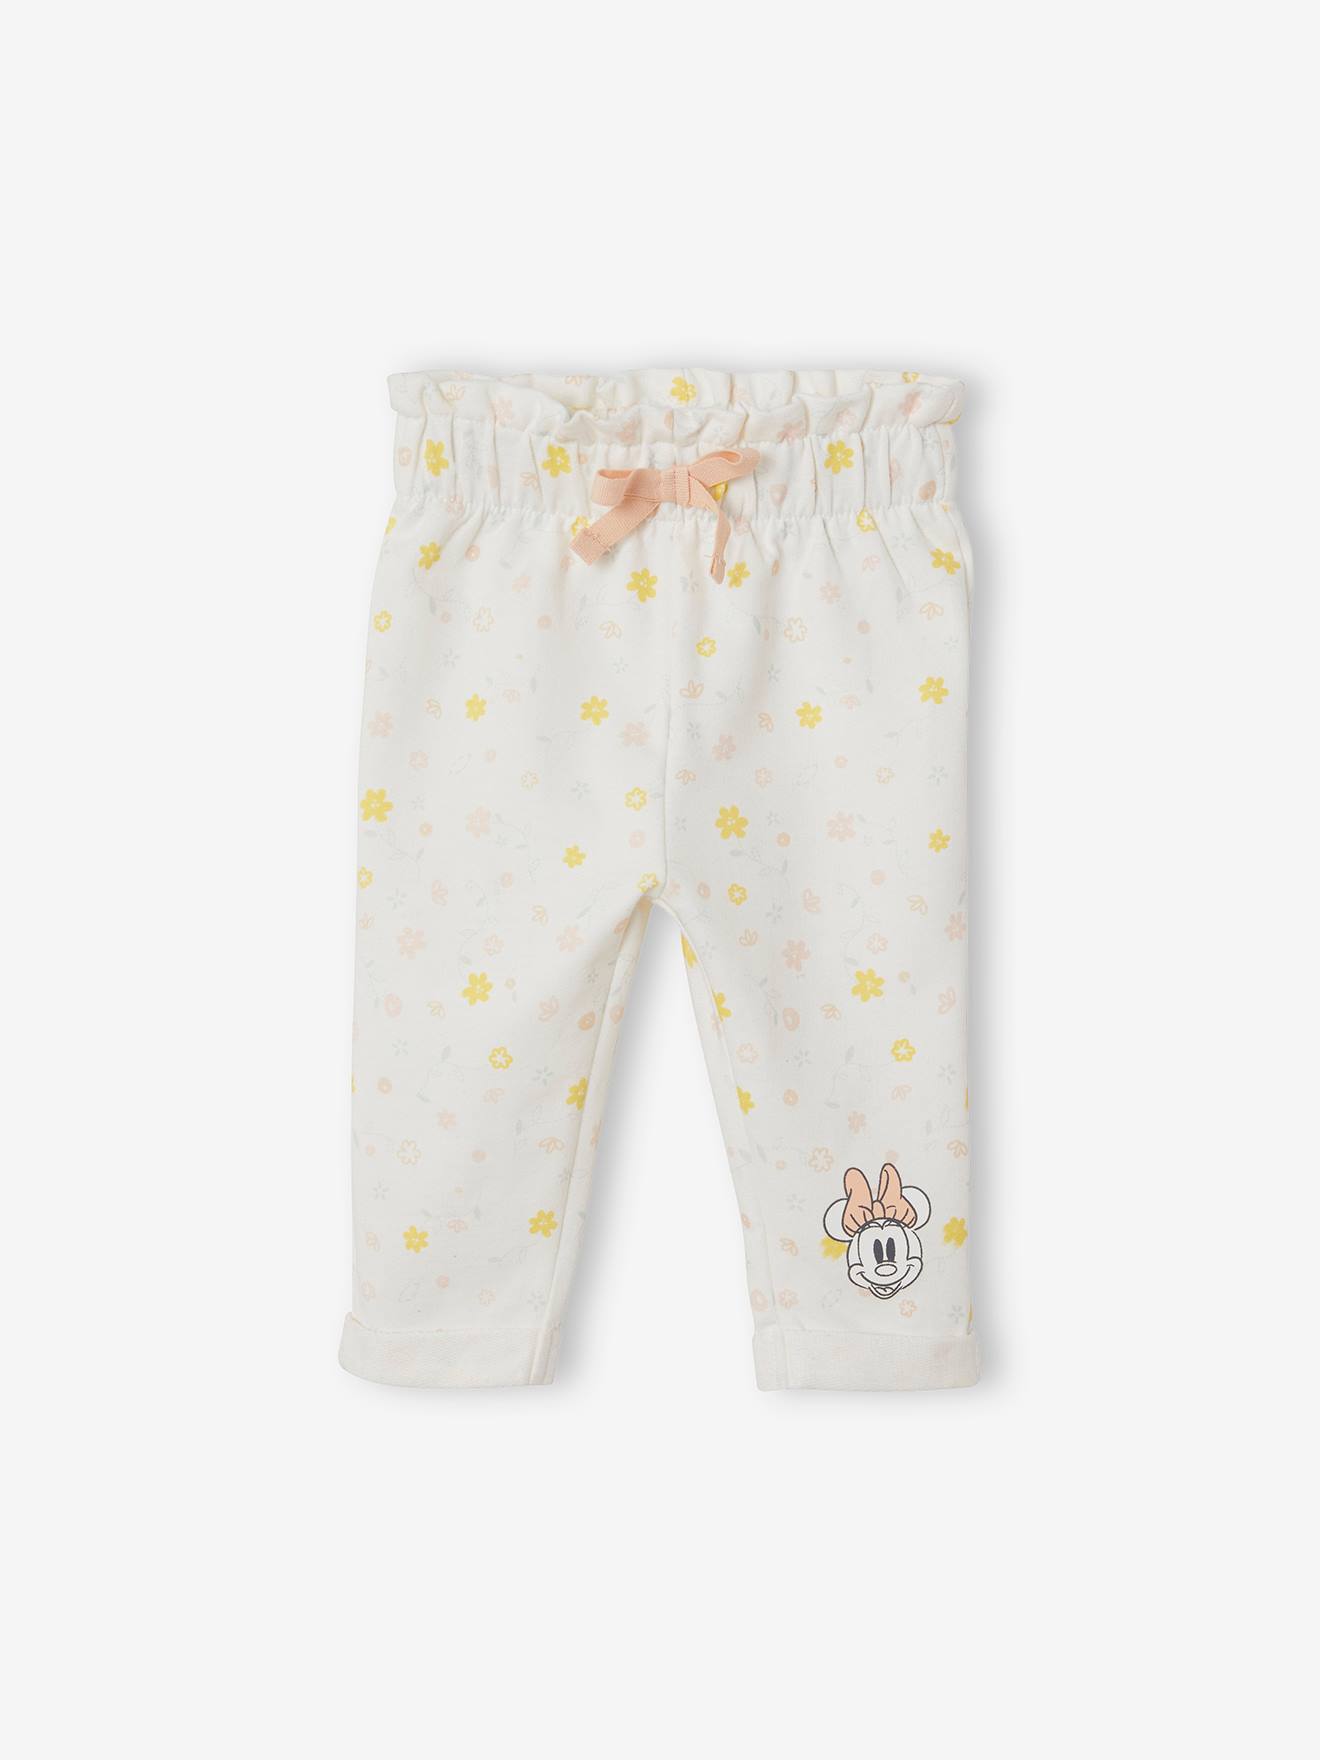 Legging voor babymeisje Disney Minnie® wit met print